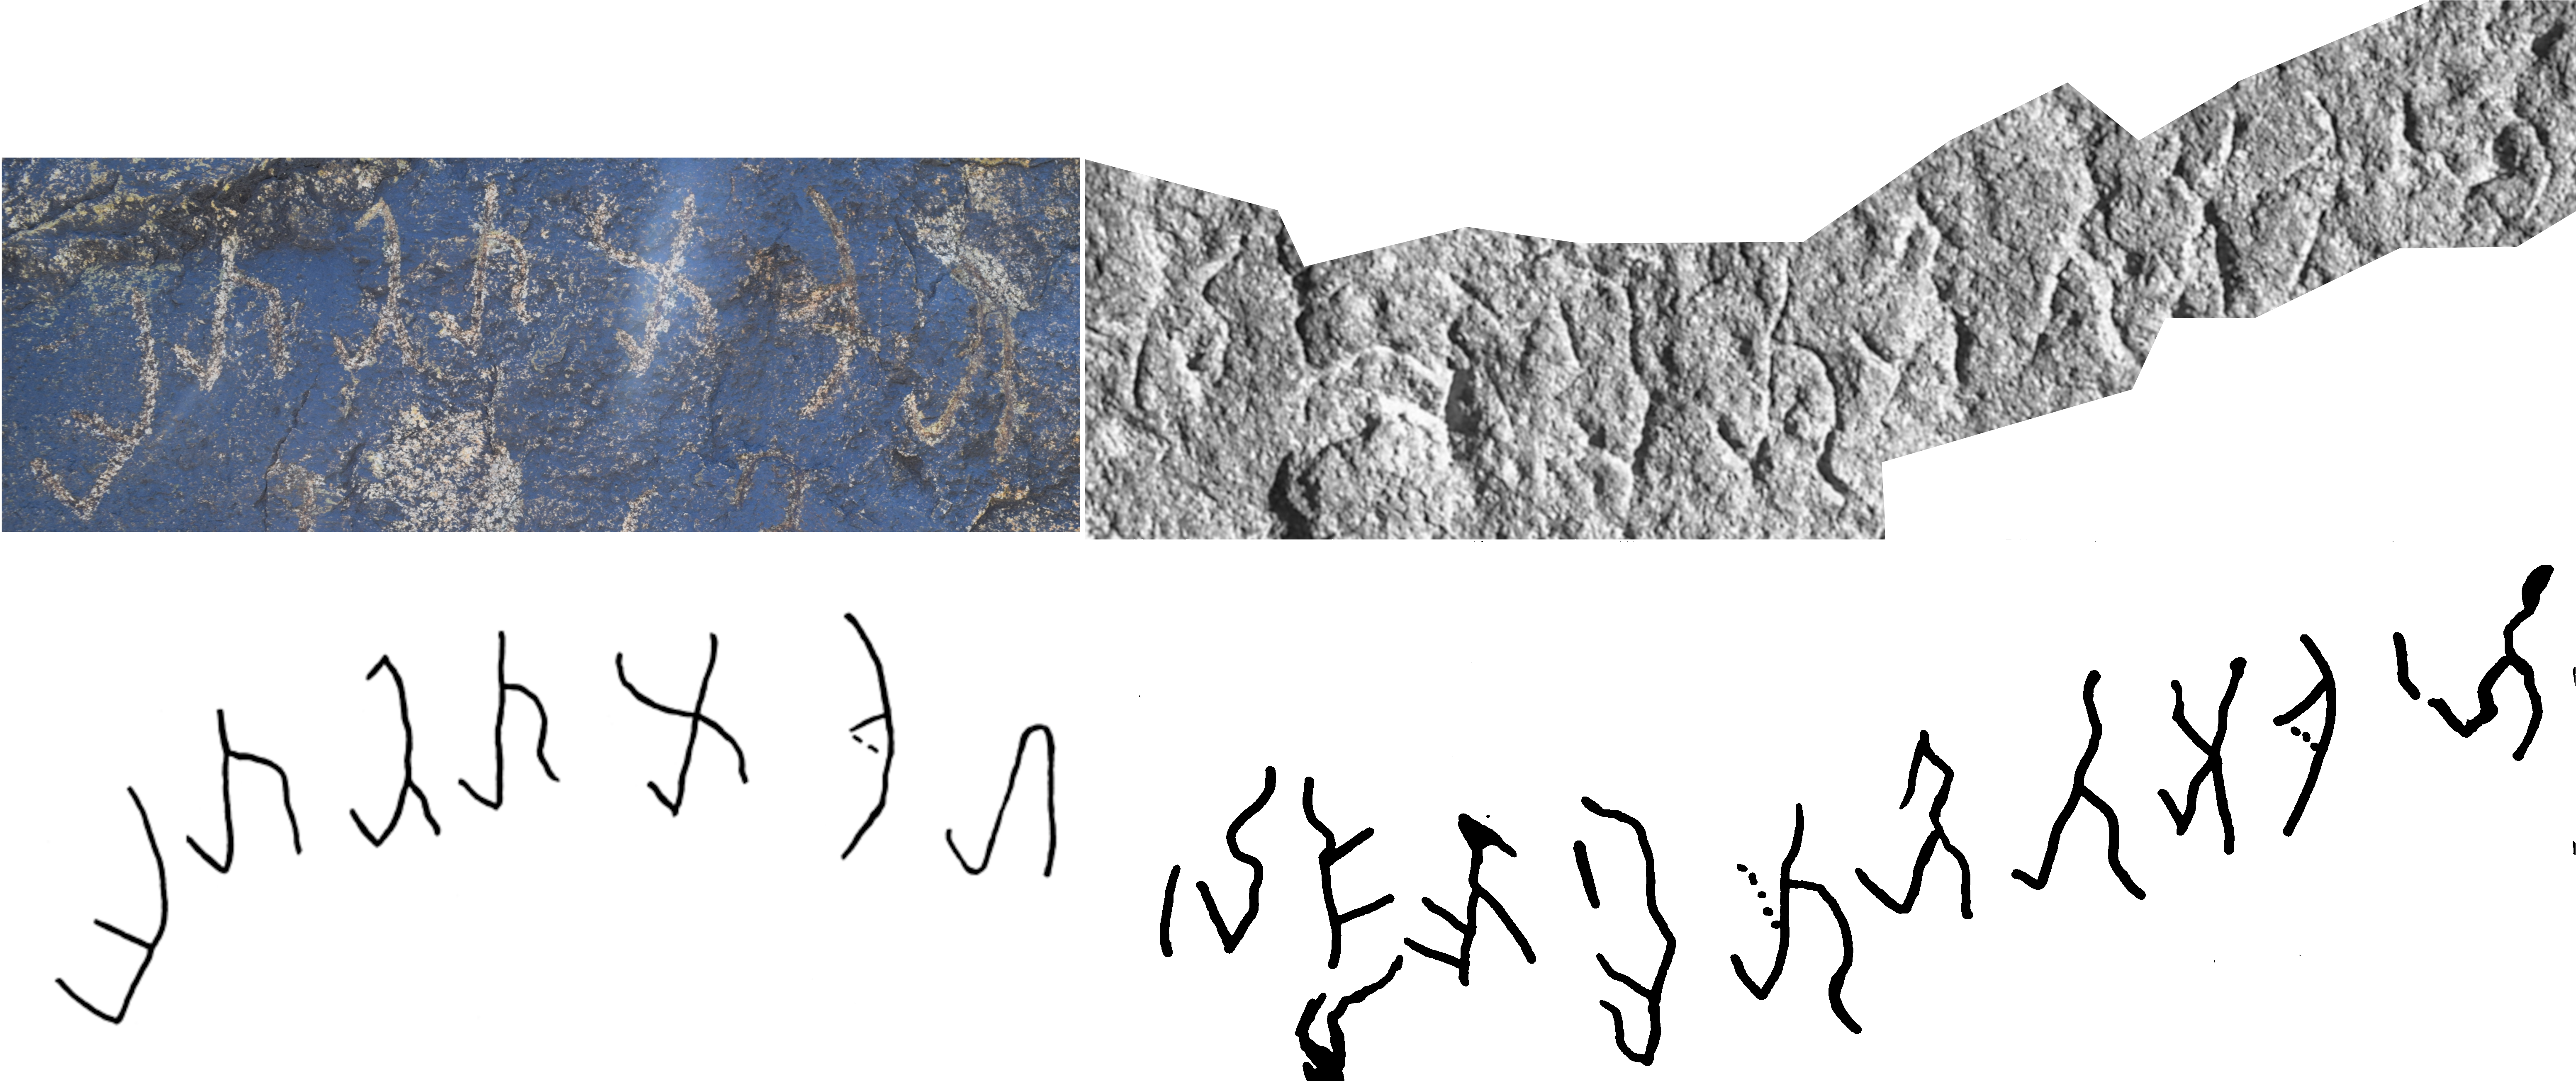 Unknown Kushan Script partially deciphered unbekannte Kuschana-Schrift